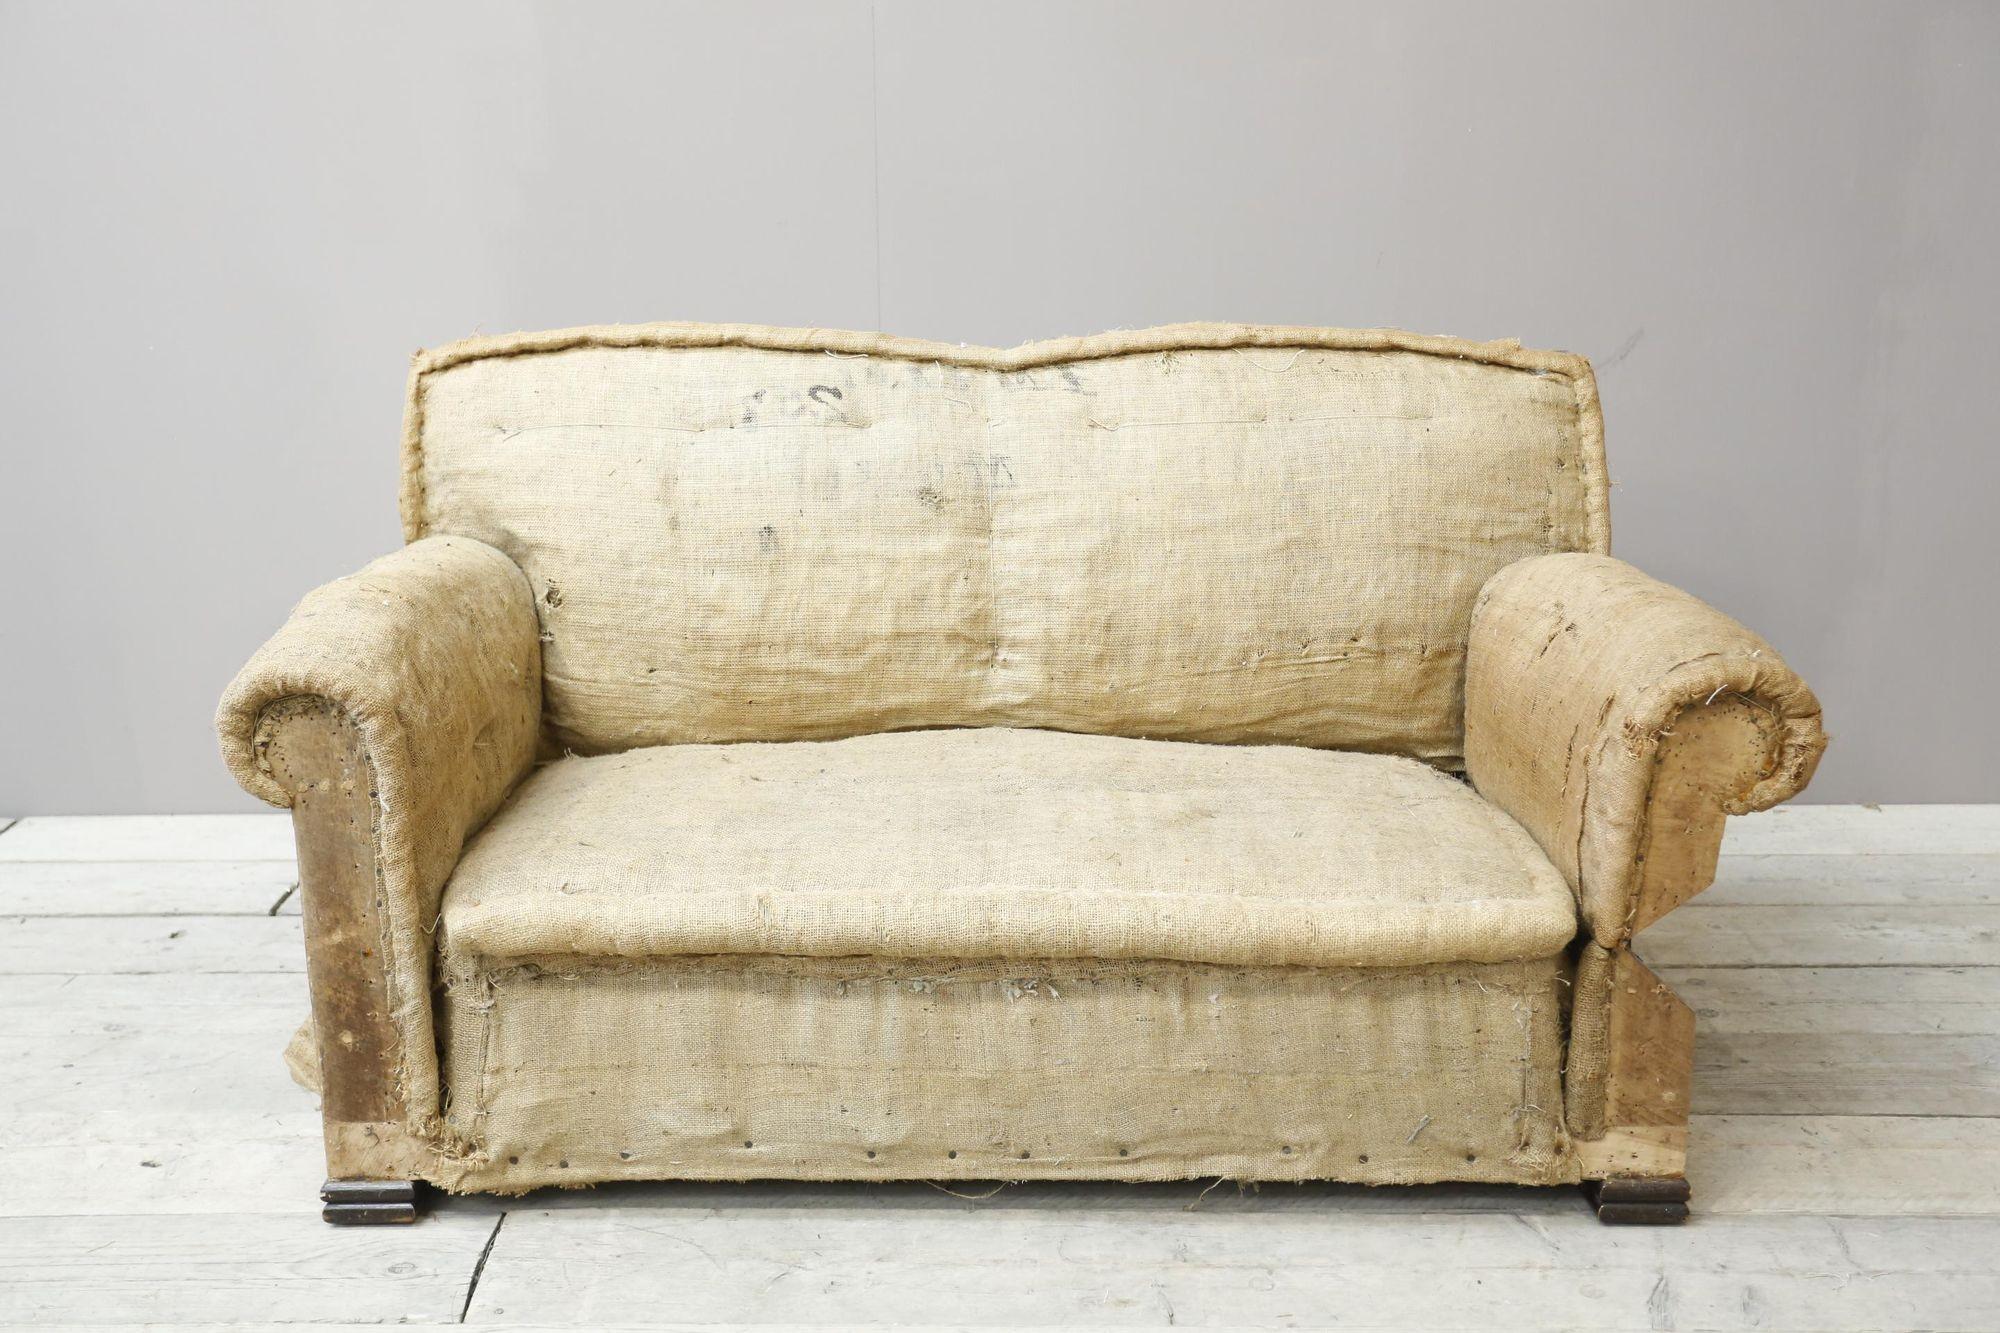 Wenn Sie dieses Sofa gepolstert haben möchten, klicken Sie bitte auf 